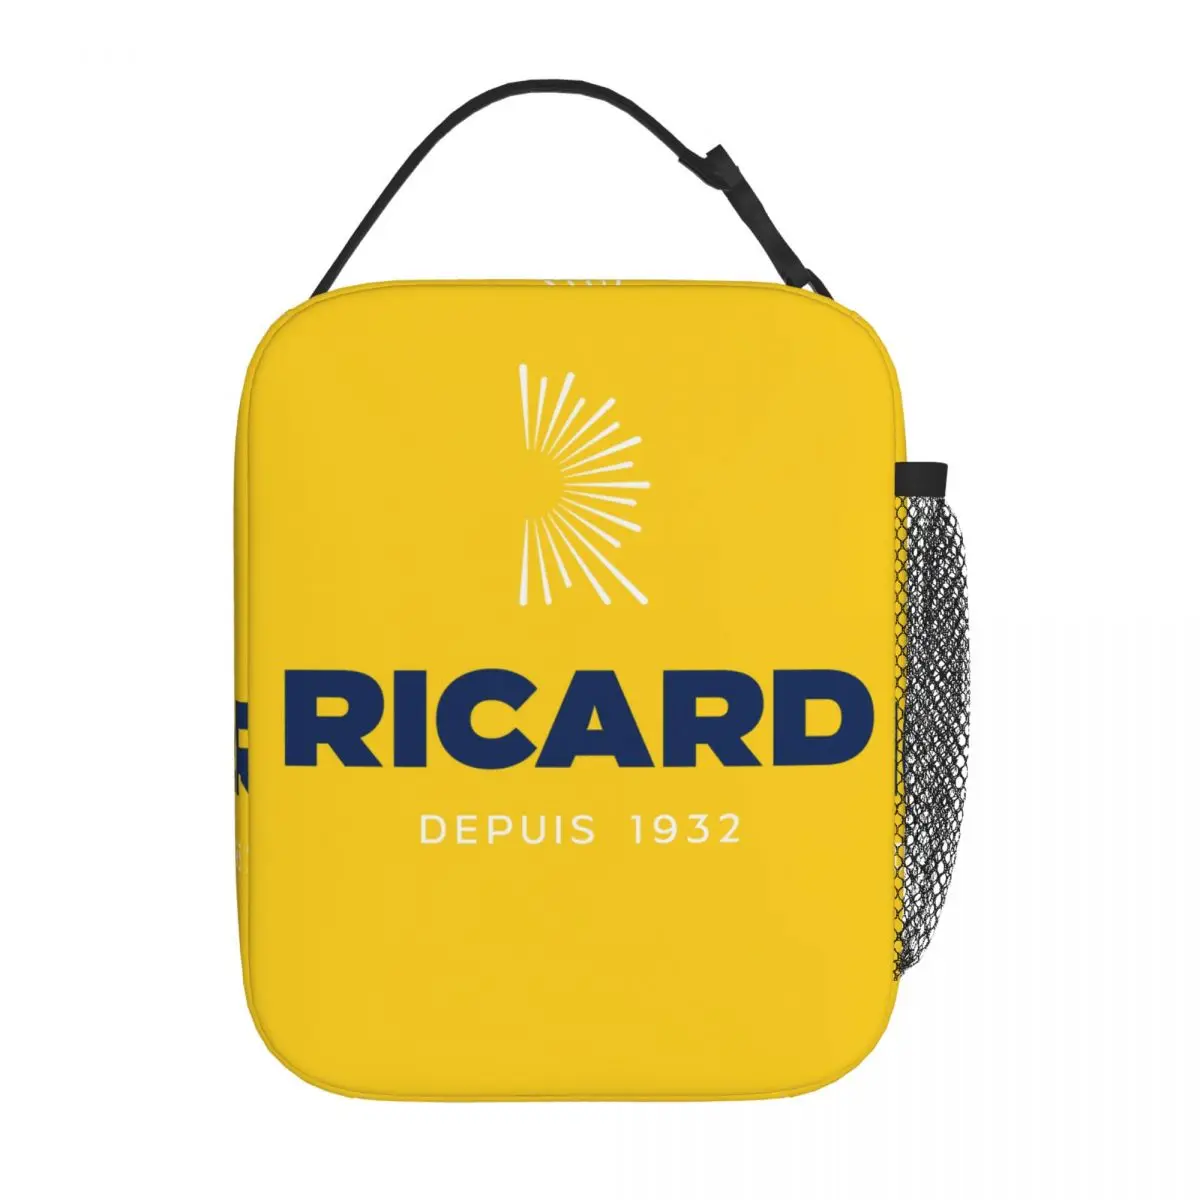 Pernod Ricards Merch Изолированная сумка для ланча для путешествий Контейнер для еды Портативный холодильник Термоланч Боксы